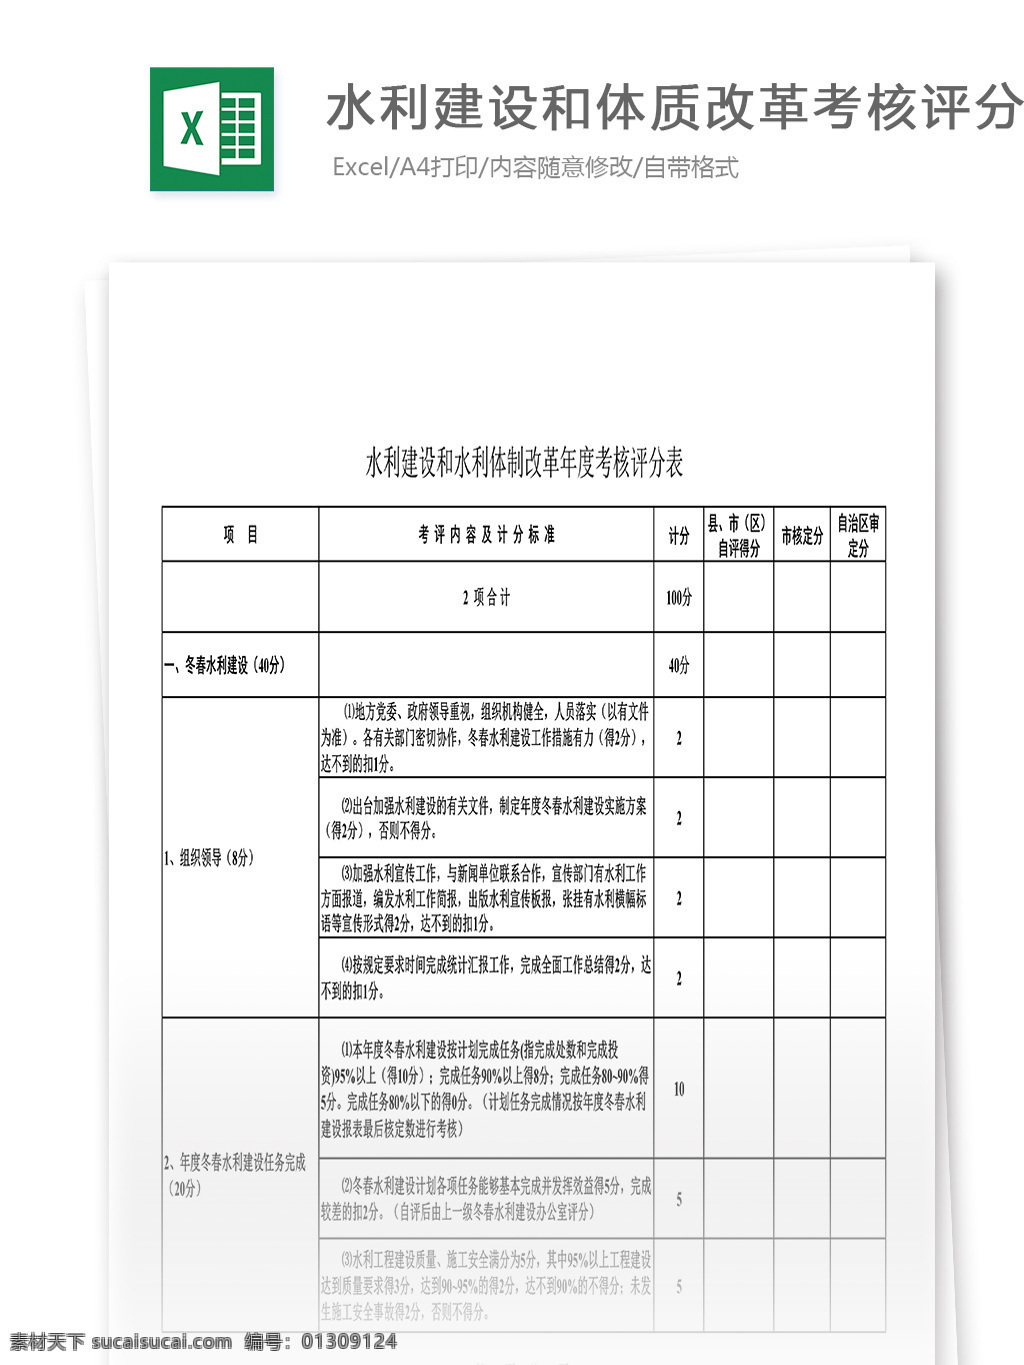 水利建设 体制改革 年度 考核 评分表 表格 表格模板 表格设计 图表 考核评分表